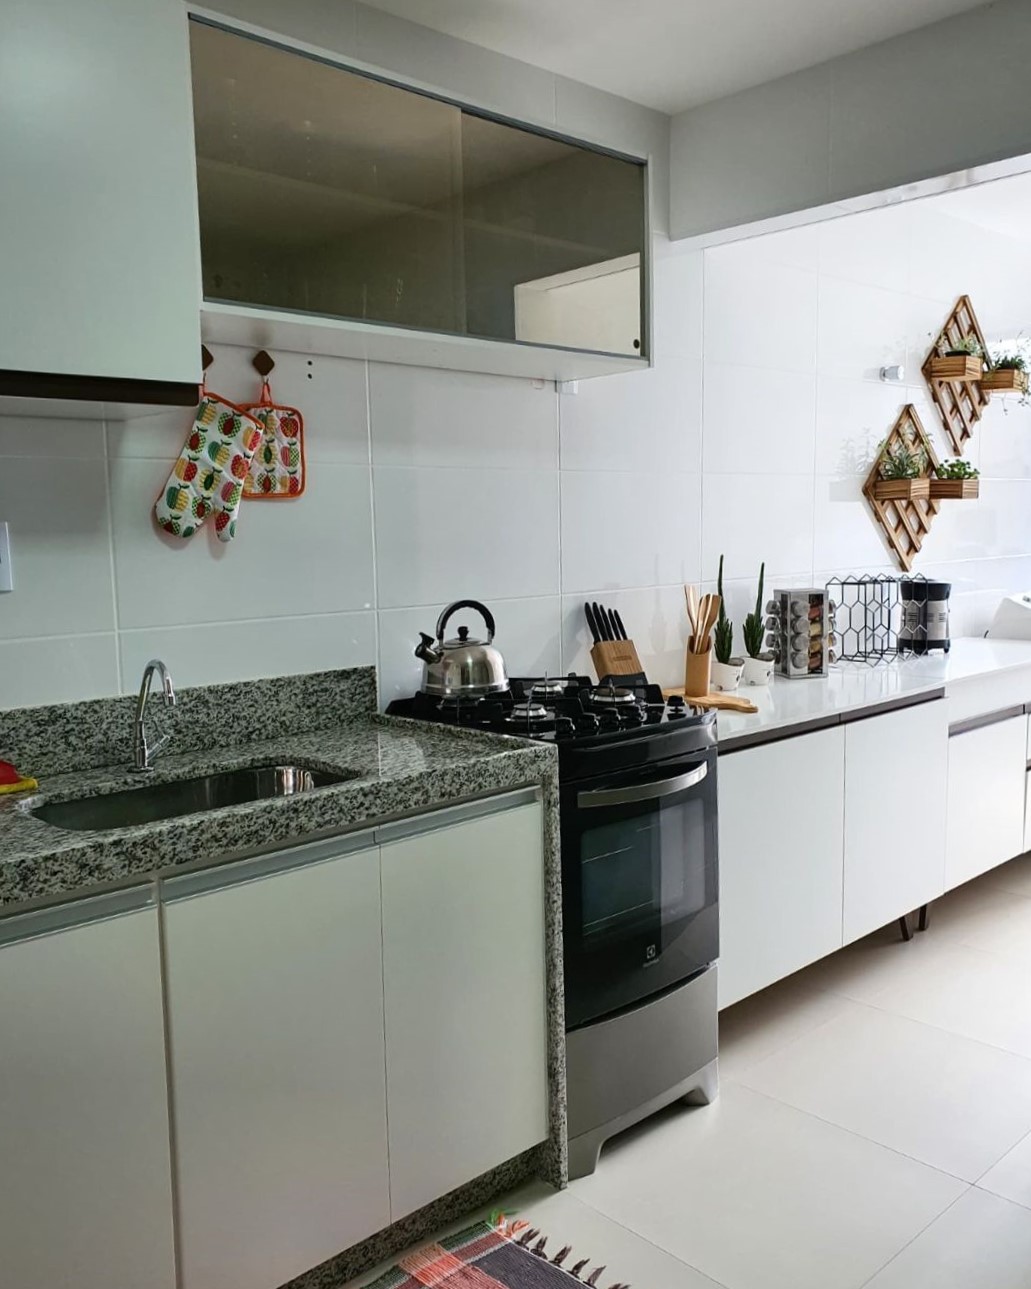 Imagem interna de uma cozinha, com dois vasos de planta suspensos na parede ao fundo